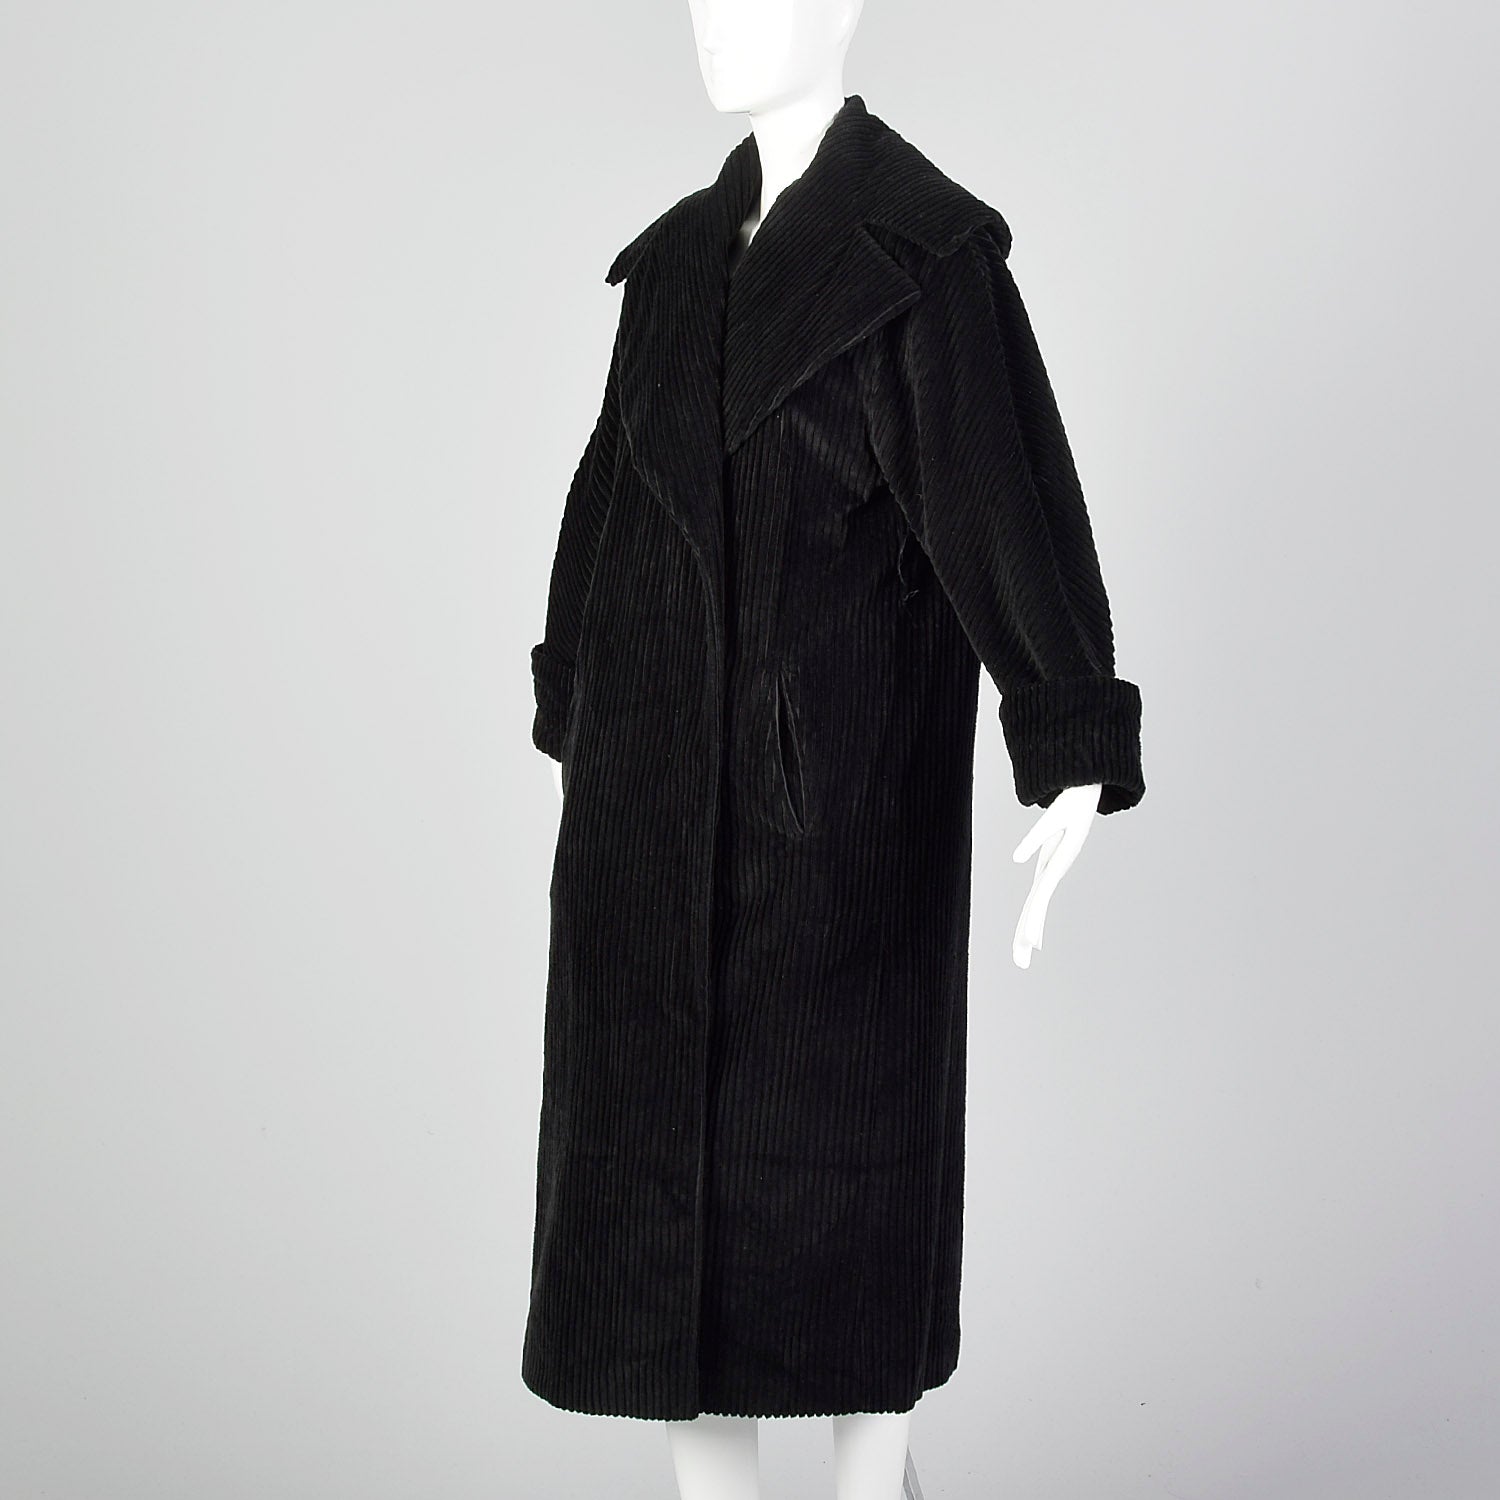 Medium Bill Blass 1980s Black Corduroy Coat